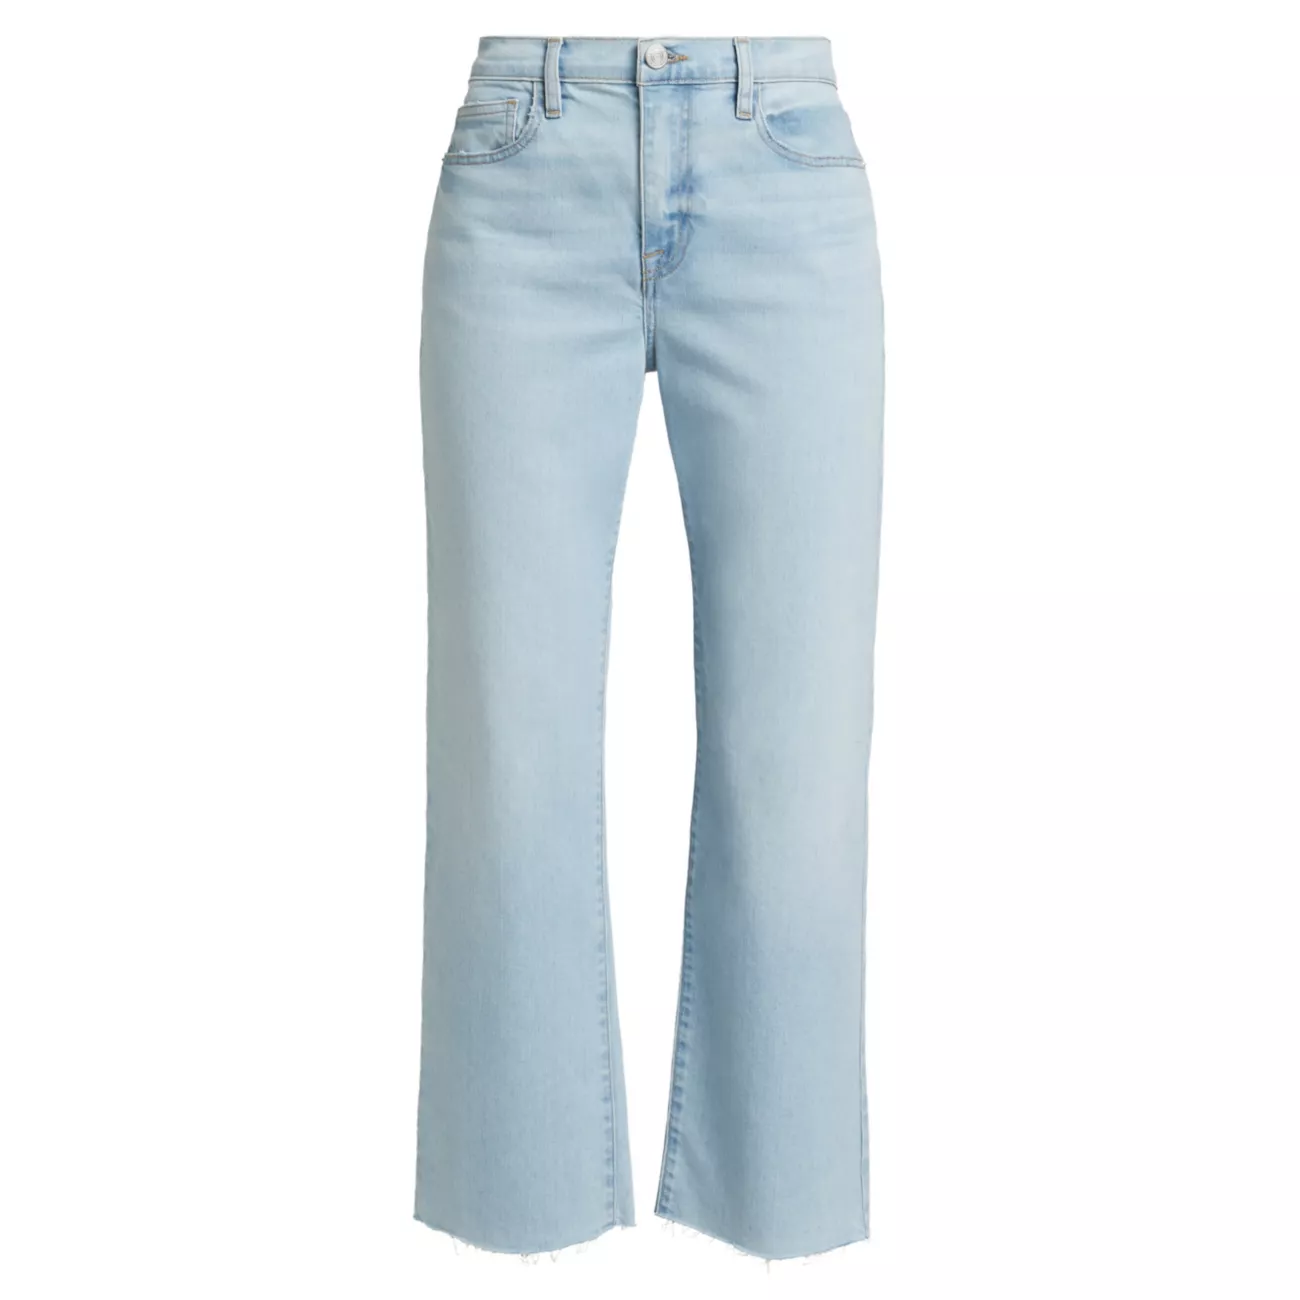 Укороченные эластичные джинсы Le Jane со средней посадкой и сапогами FRAME